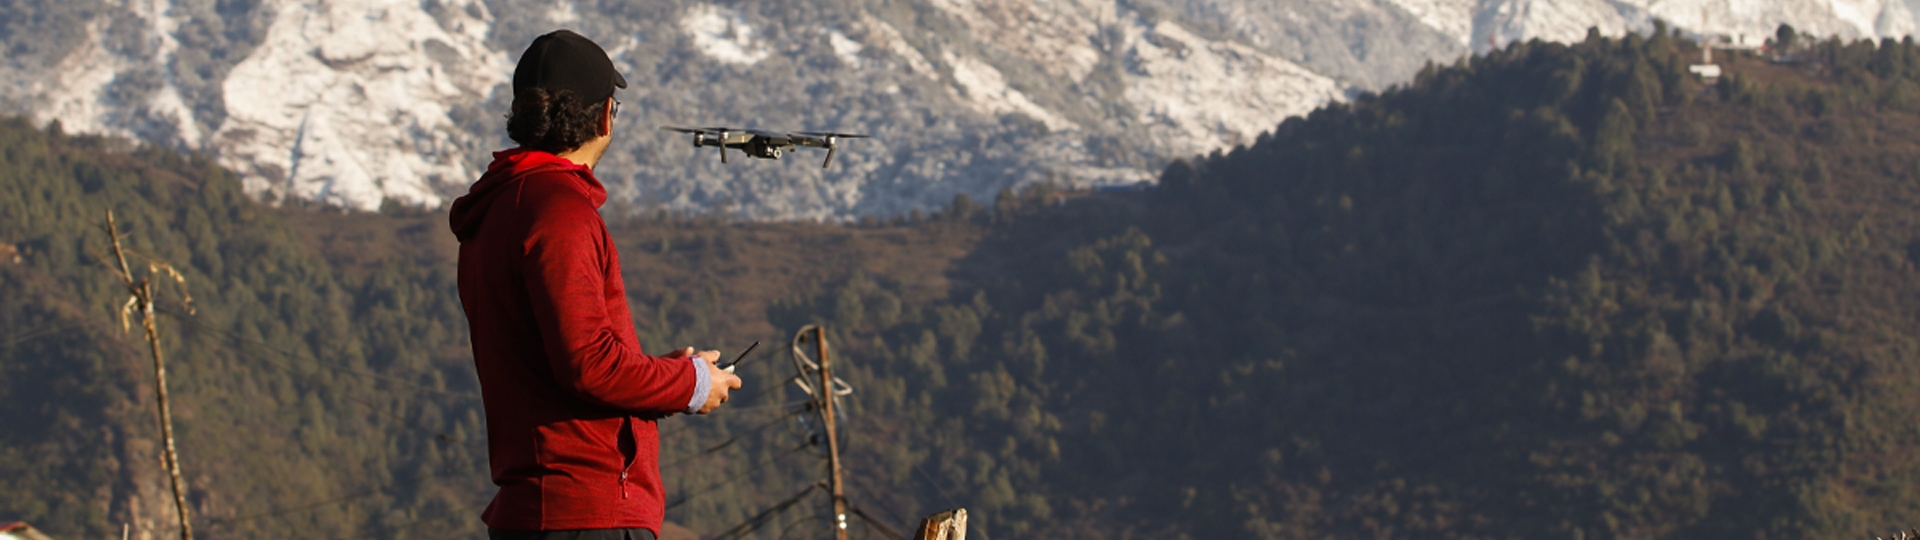 Flying drone at Ghandruk Village